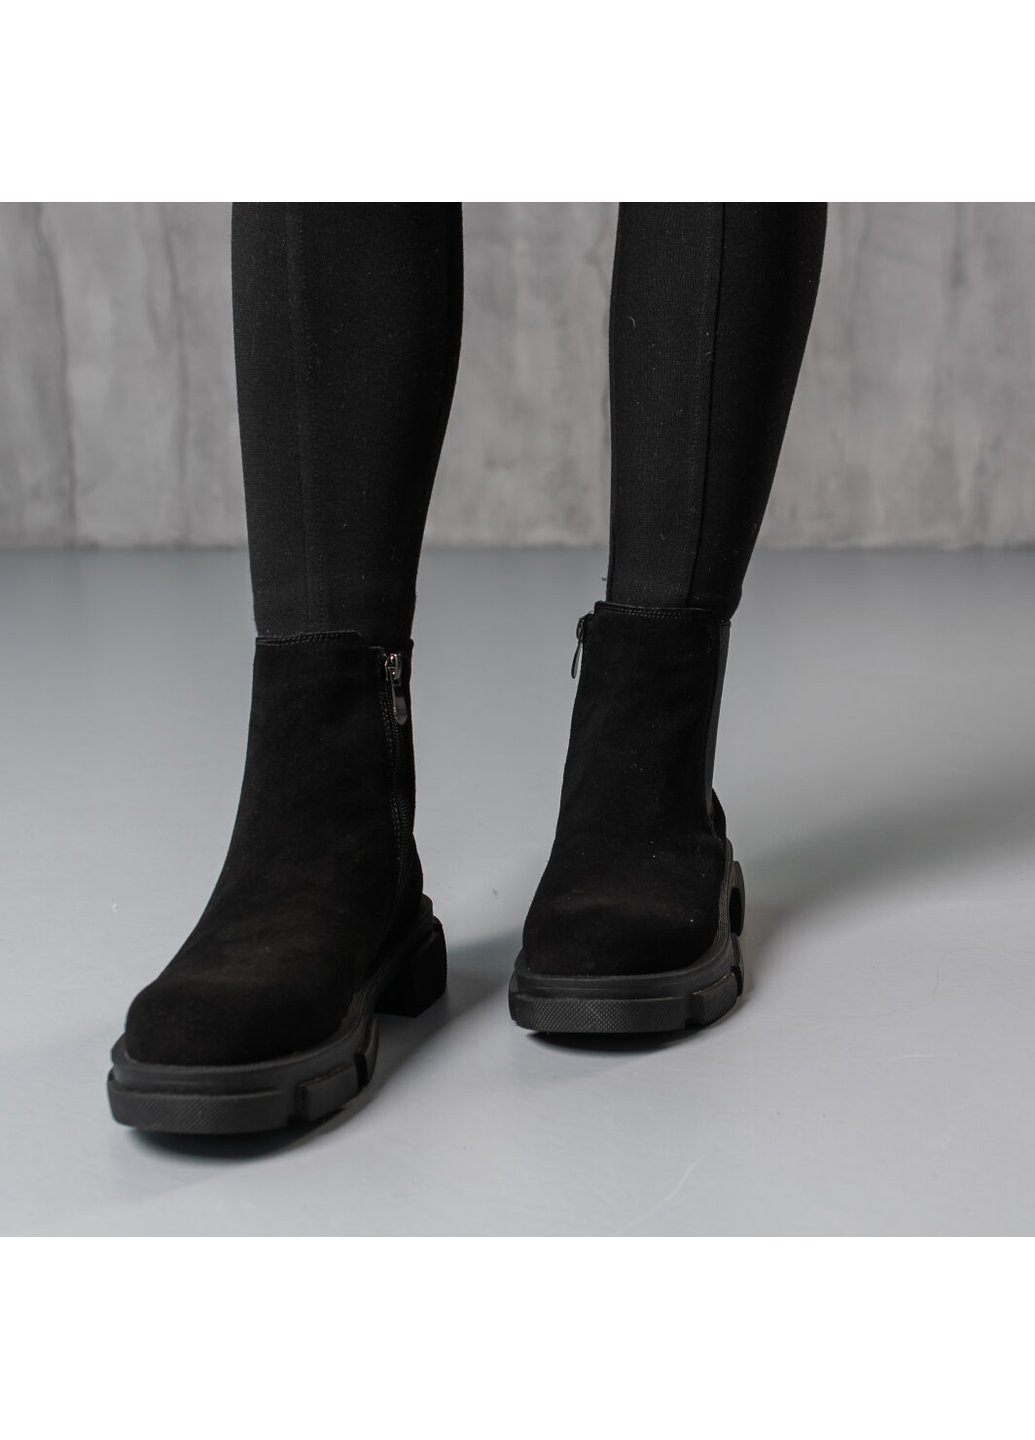 Осенние ботинки женские hoofy 3846 24 черный Fashion из натуральной замши